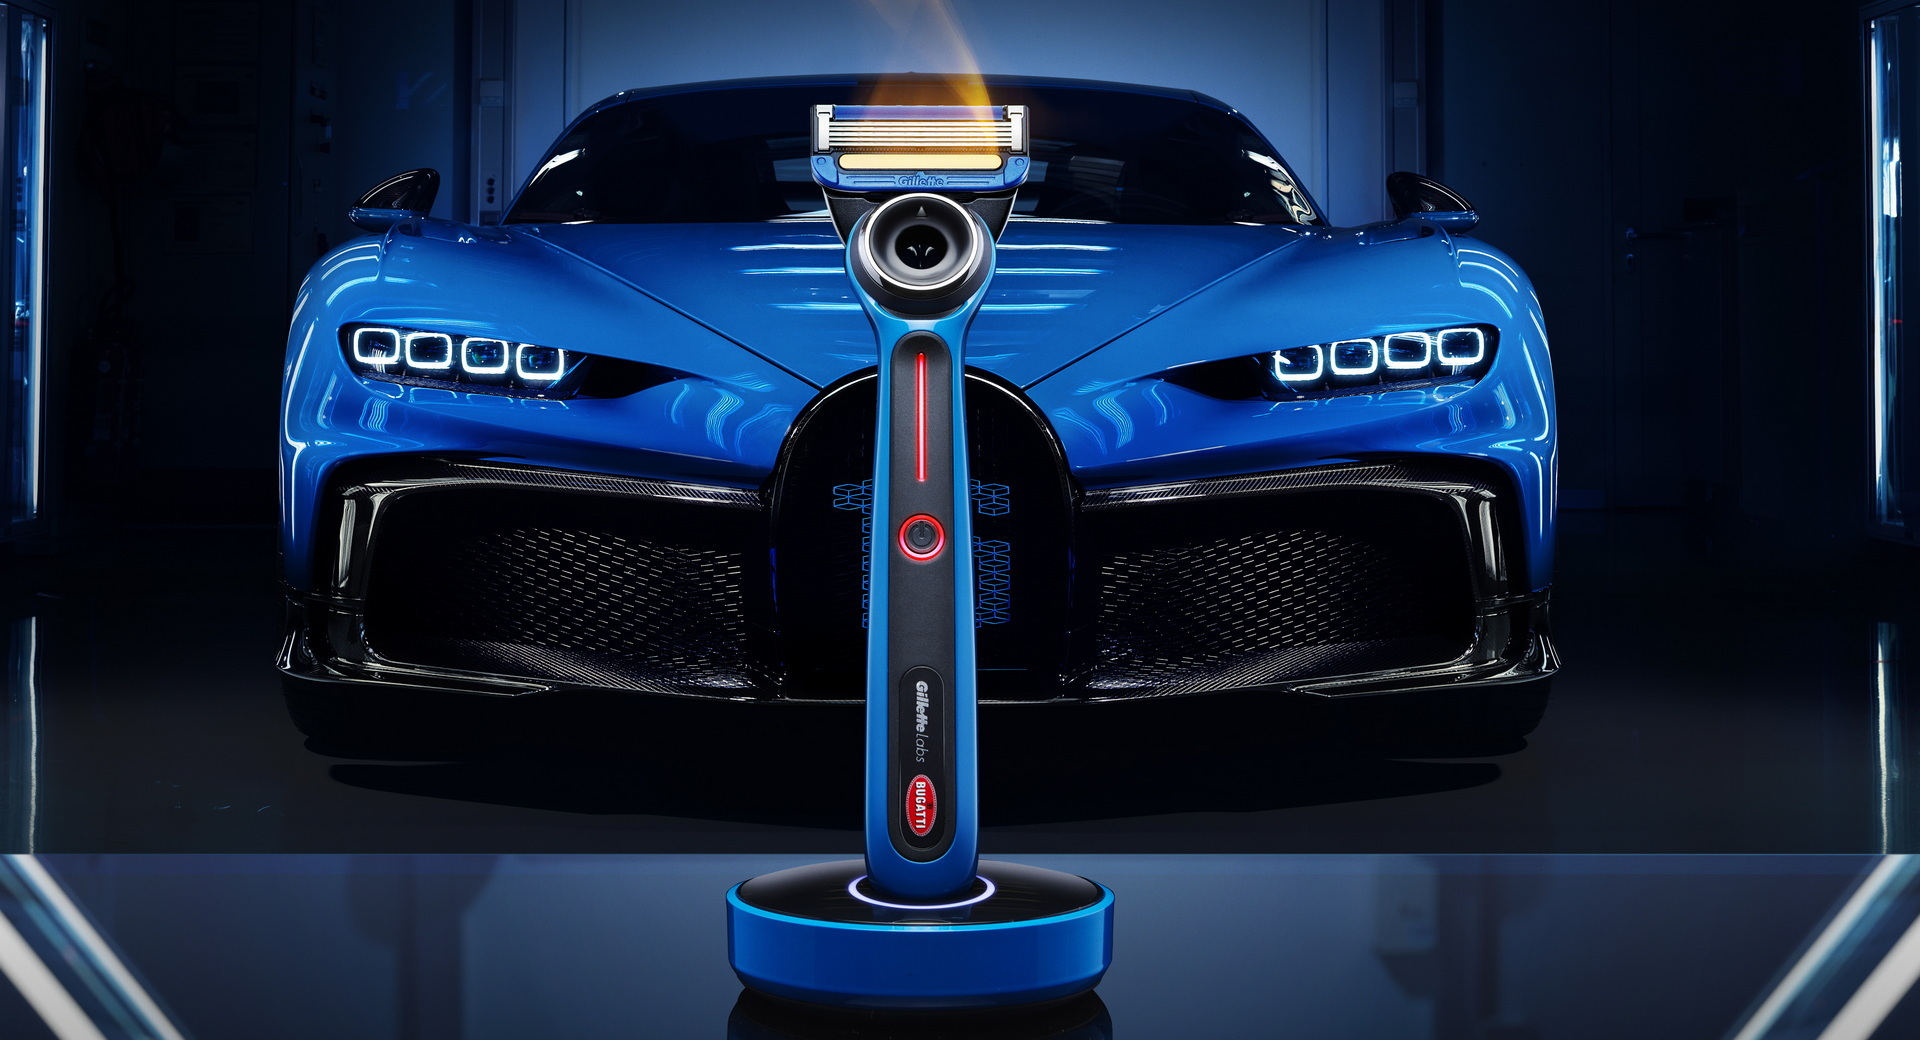 Gillette Heated Razor Bugatti